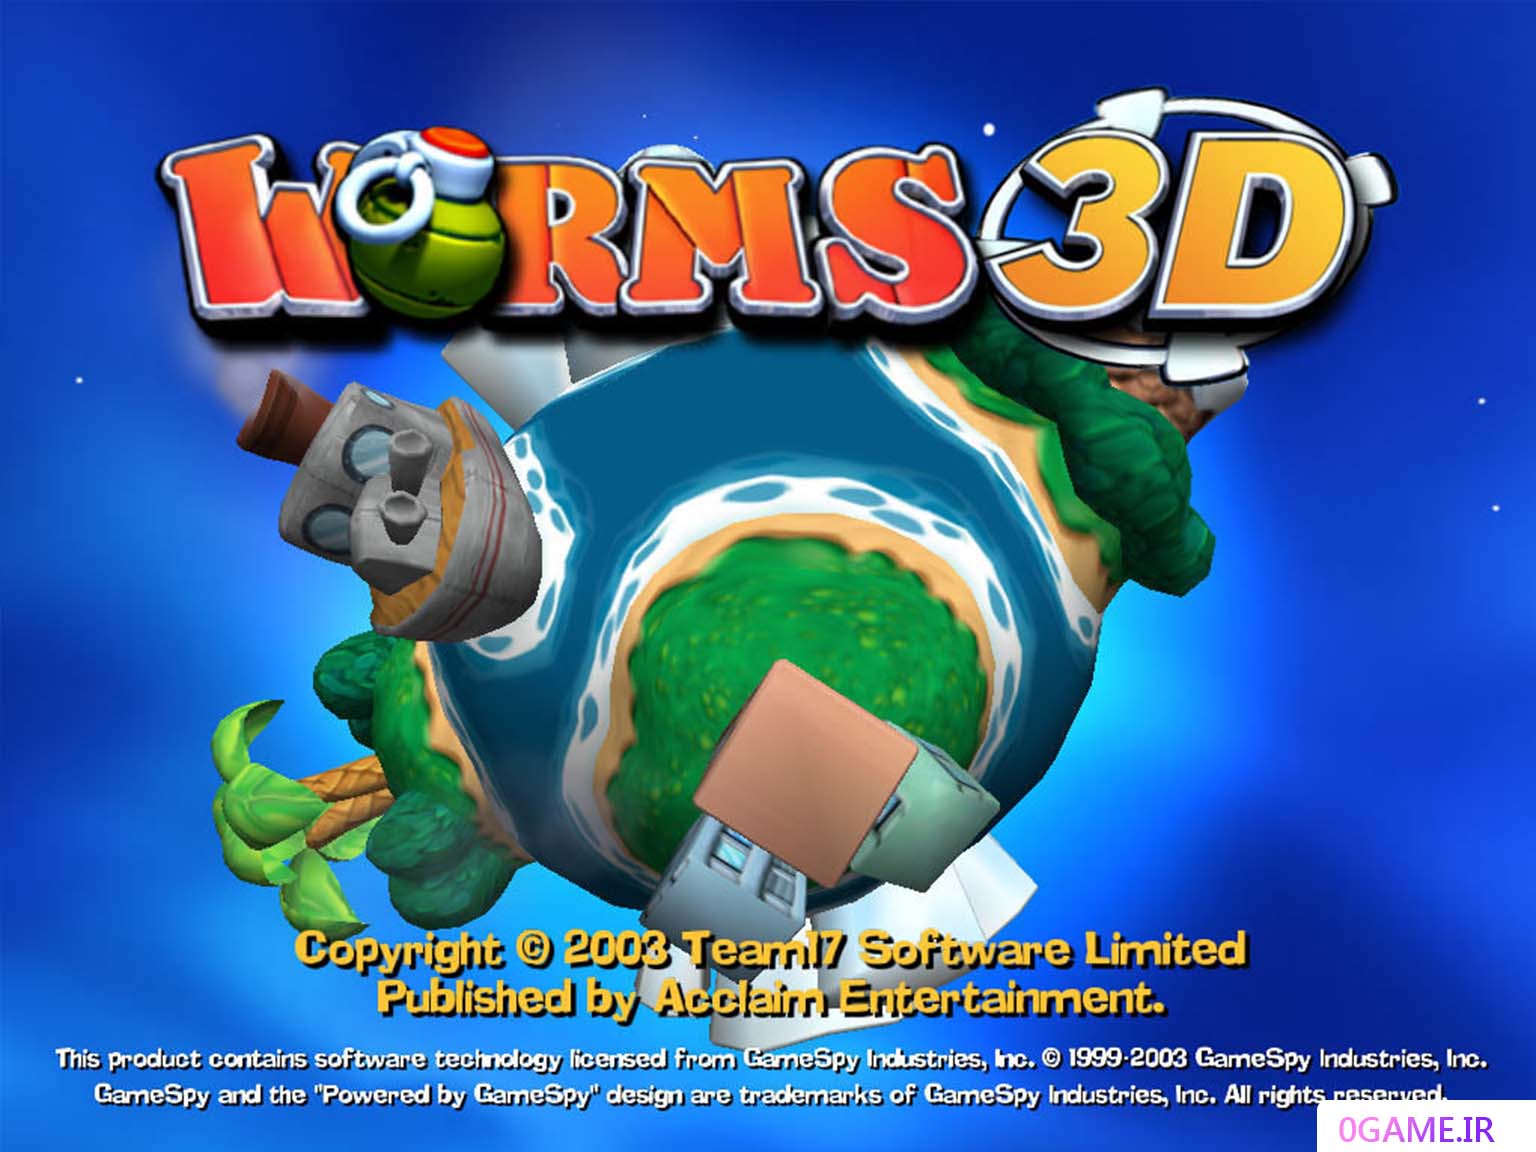 دانلود بازی کرم های سه بعدی (Worms 3D) نسخه کامل برای کامپیوتر